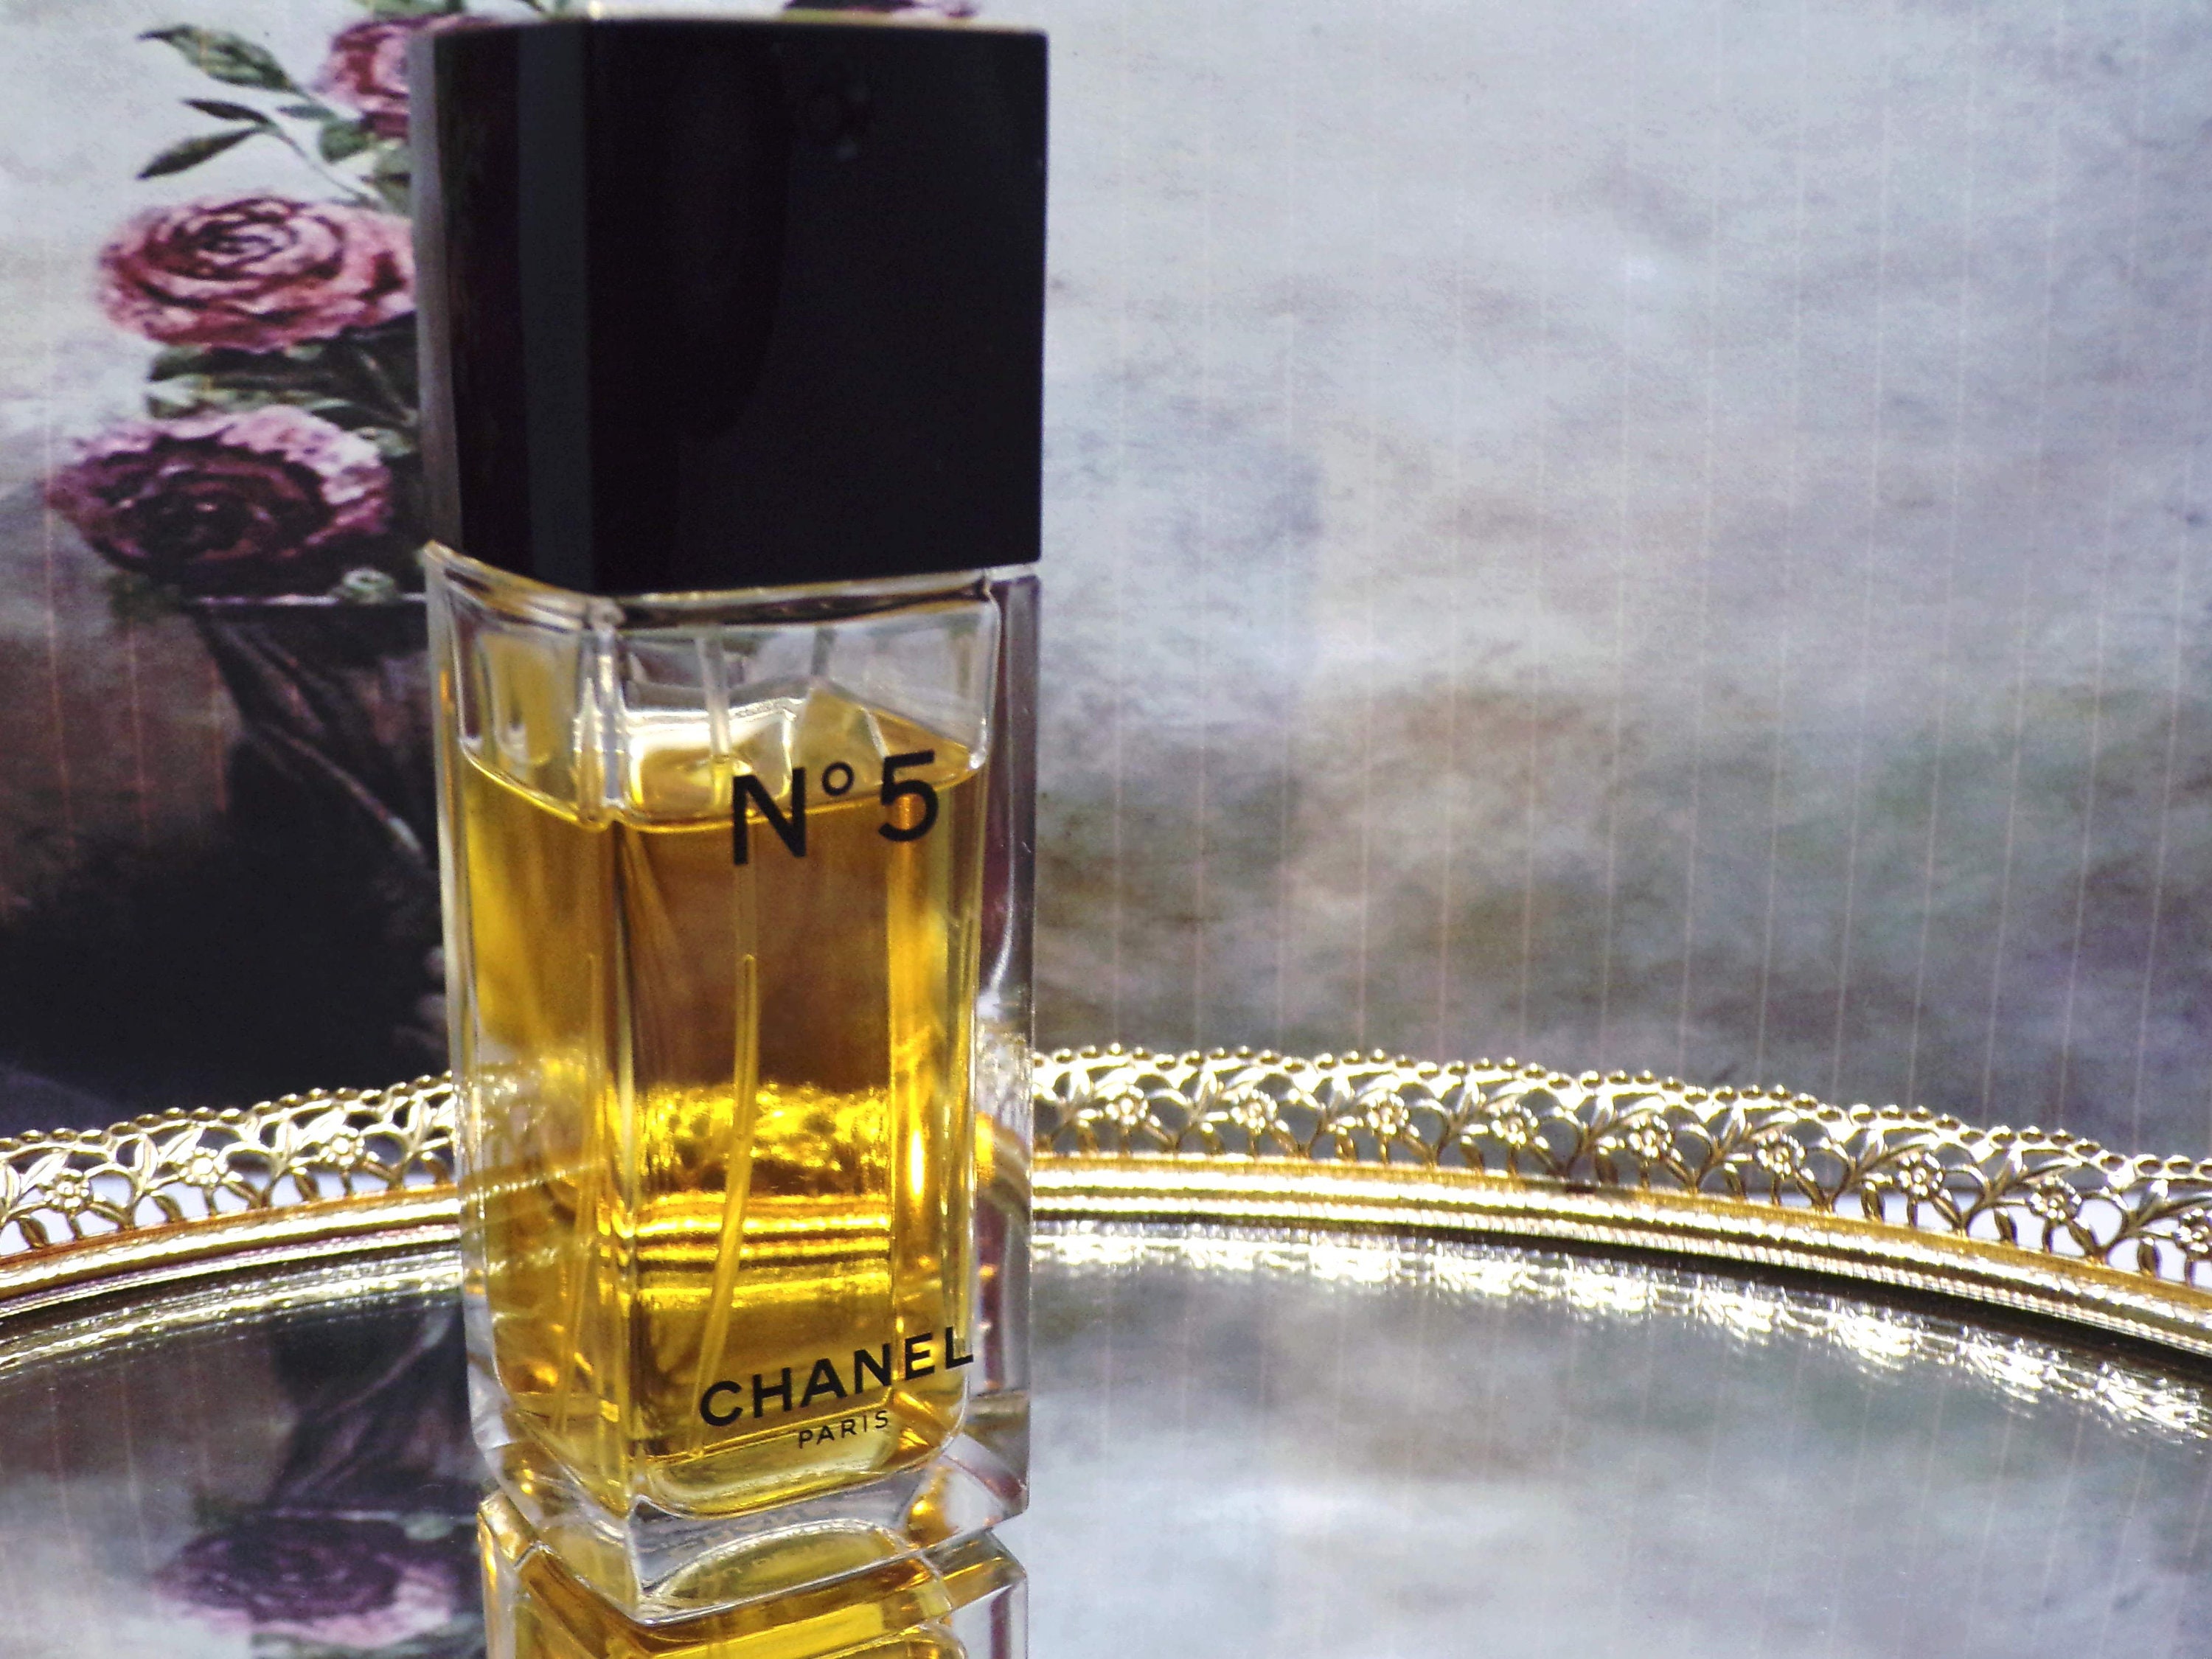 CHANEL Perfume - Chanel No 5 Perfume - Eau de Toilette Spray - 1.2 oz.  35ml. - Paris/New York - Vintage Perfume - Used Item